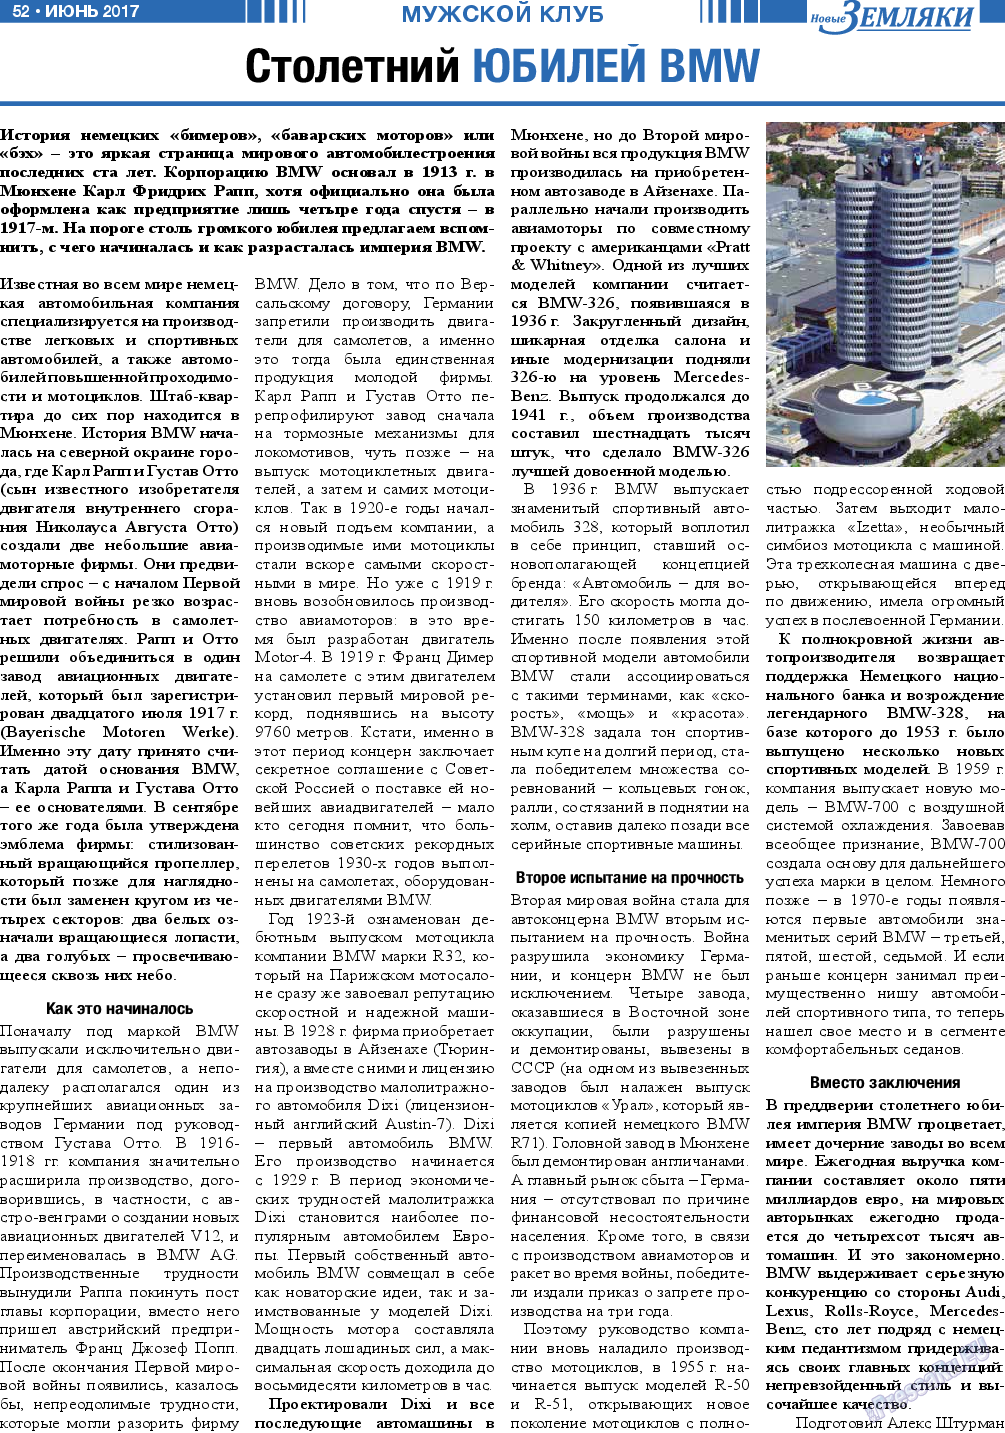 Новые Земляки (газета). 2017 год, номер 6, стр. 52